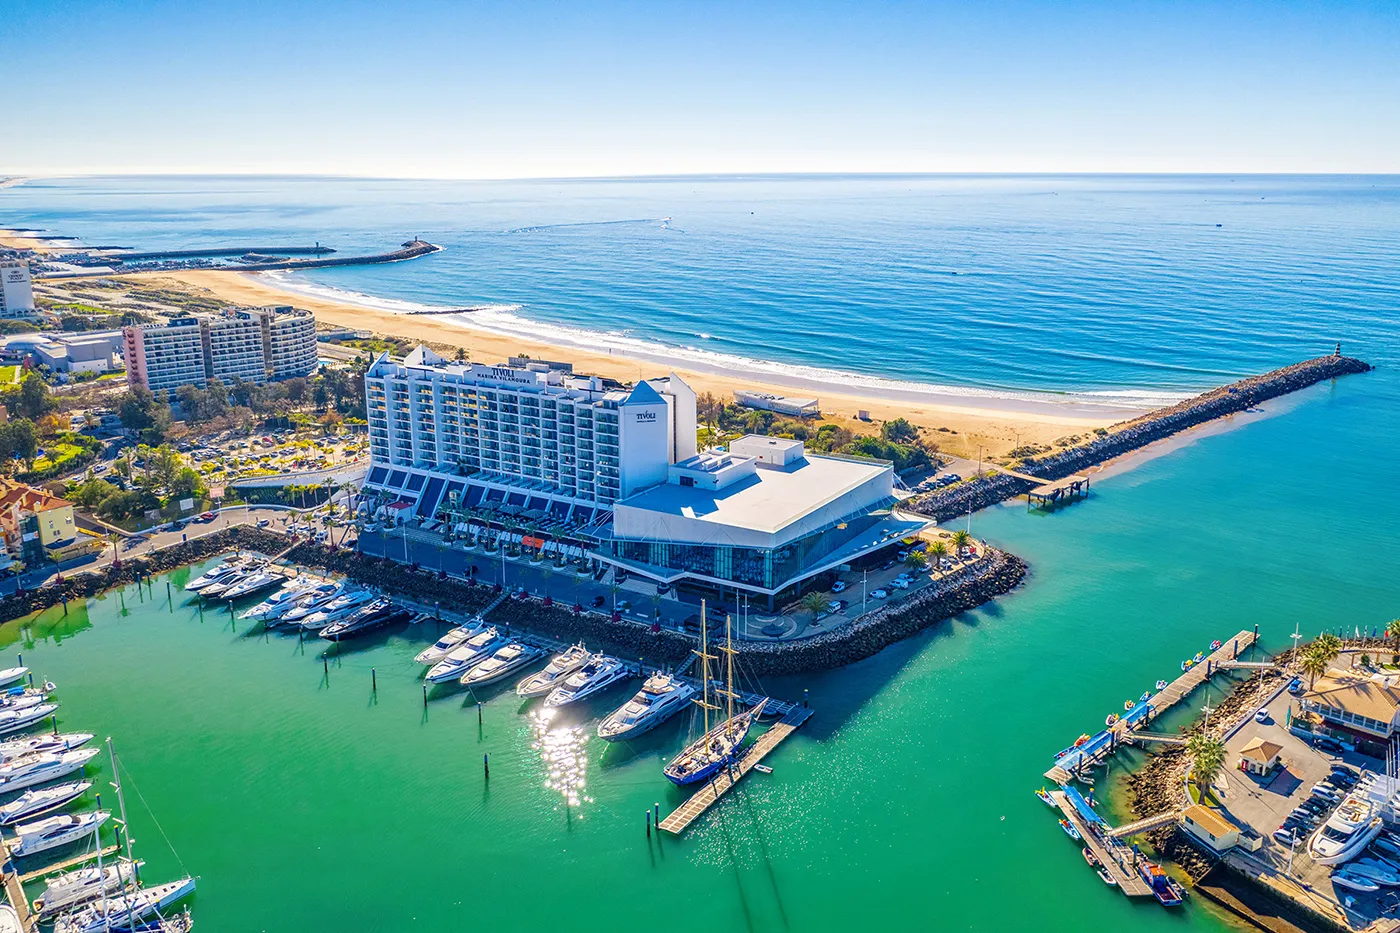 Centro de Congressos do Algarve em Vilamoura with ocean view